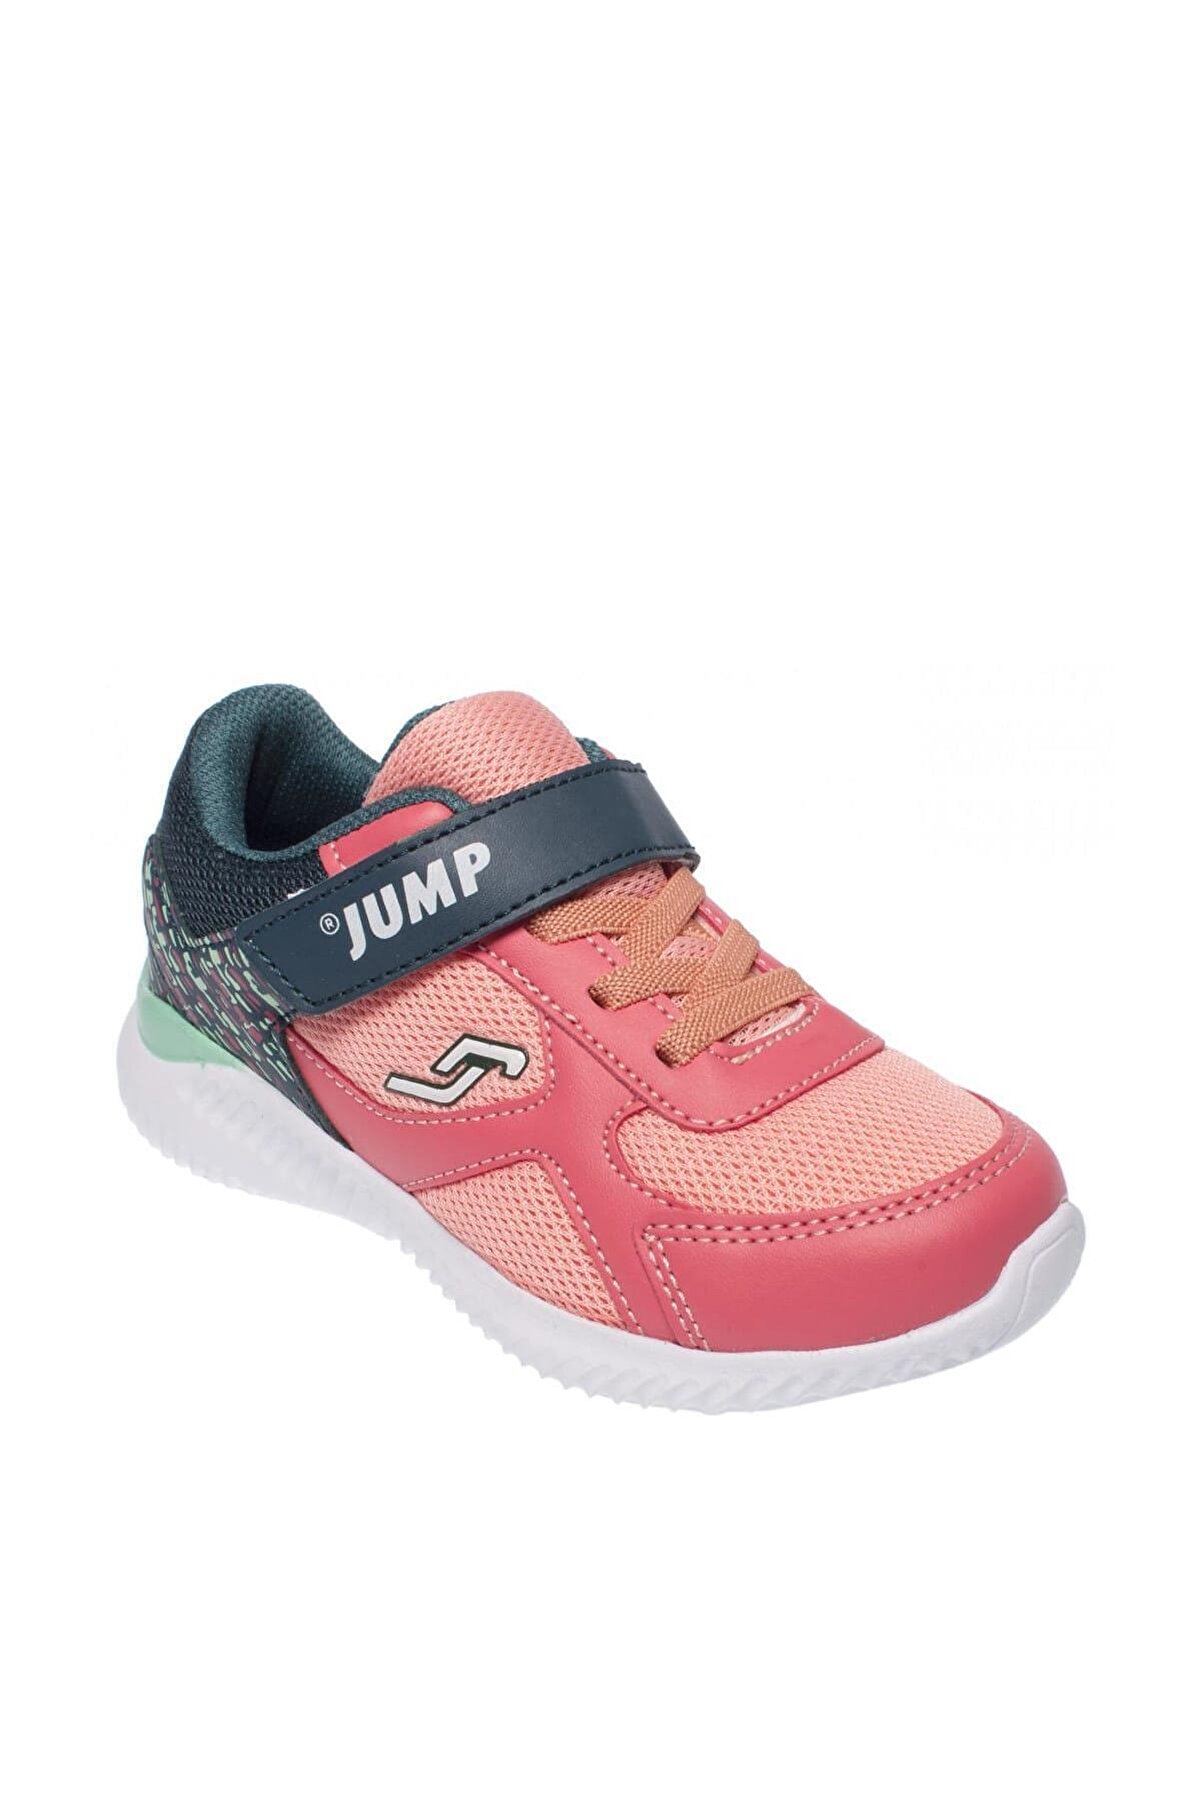 Jump Somon Pembe Kız Çocuk Ayakkabı 190 21258P